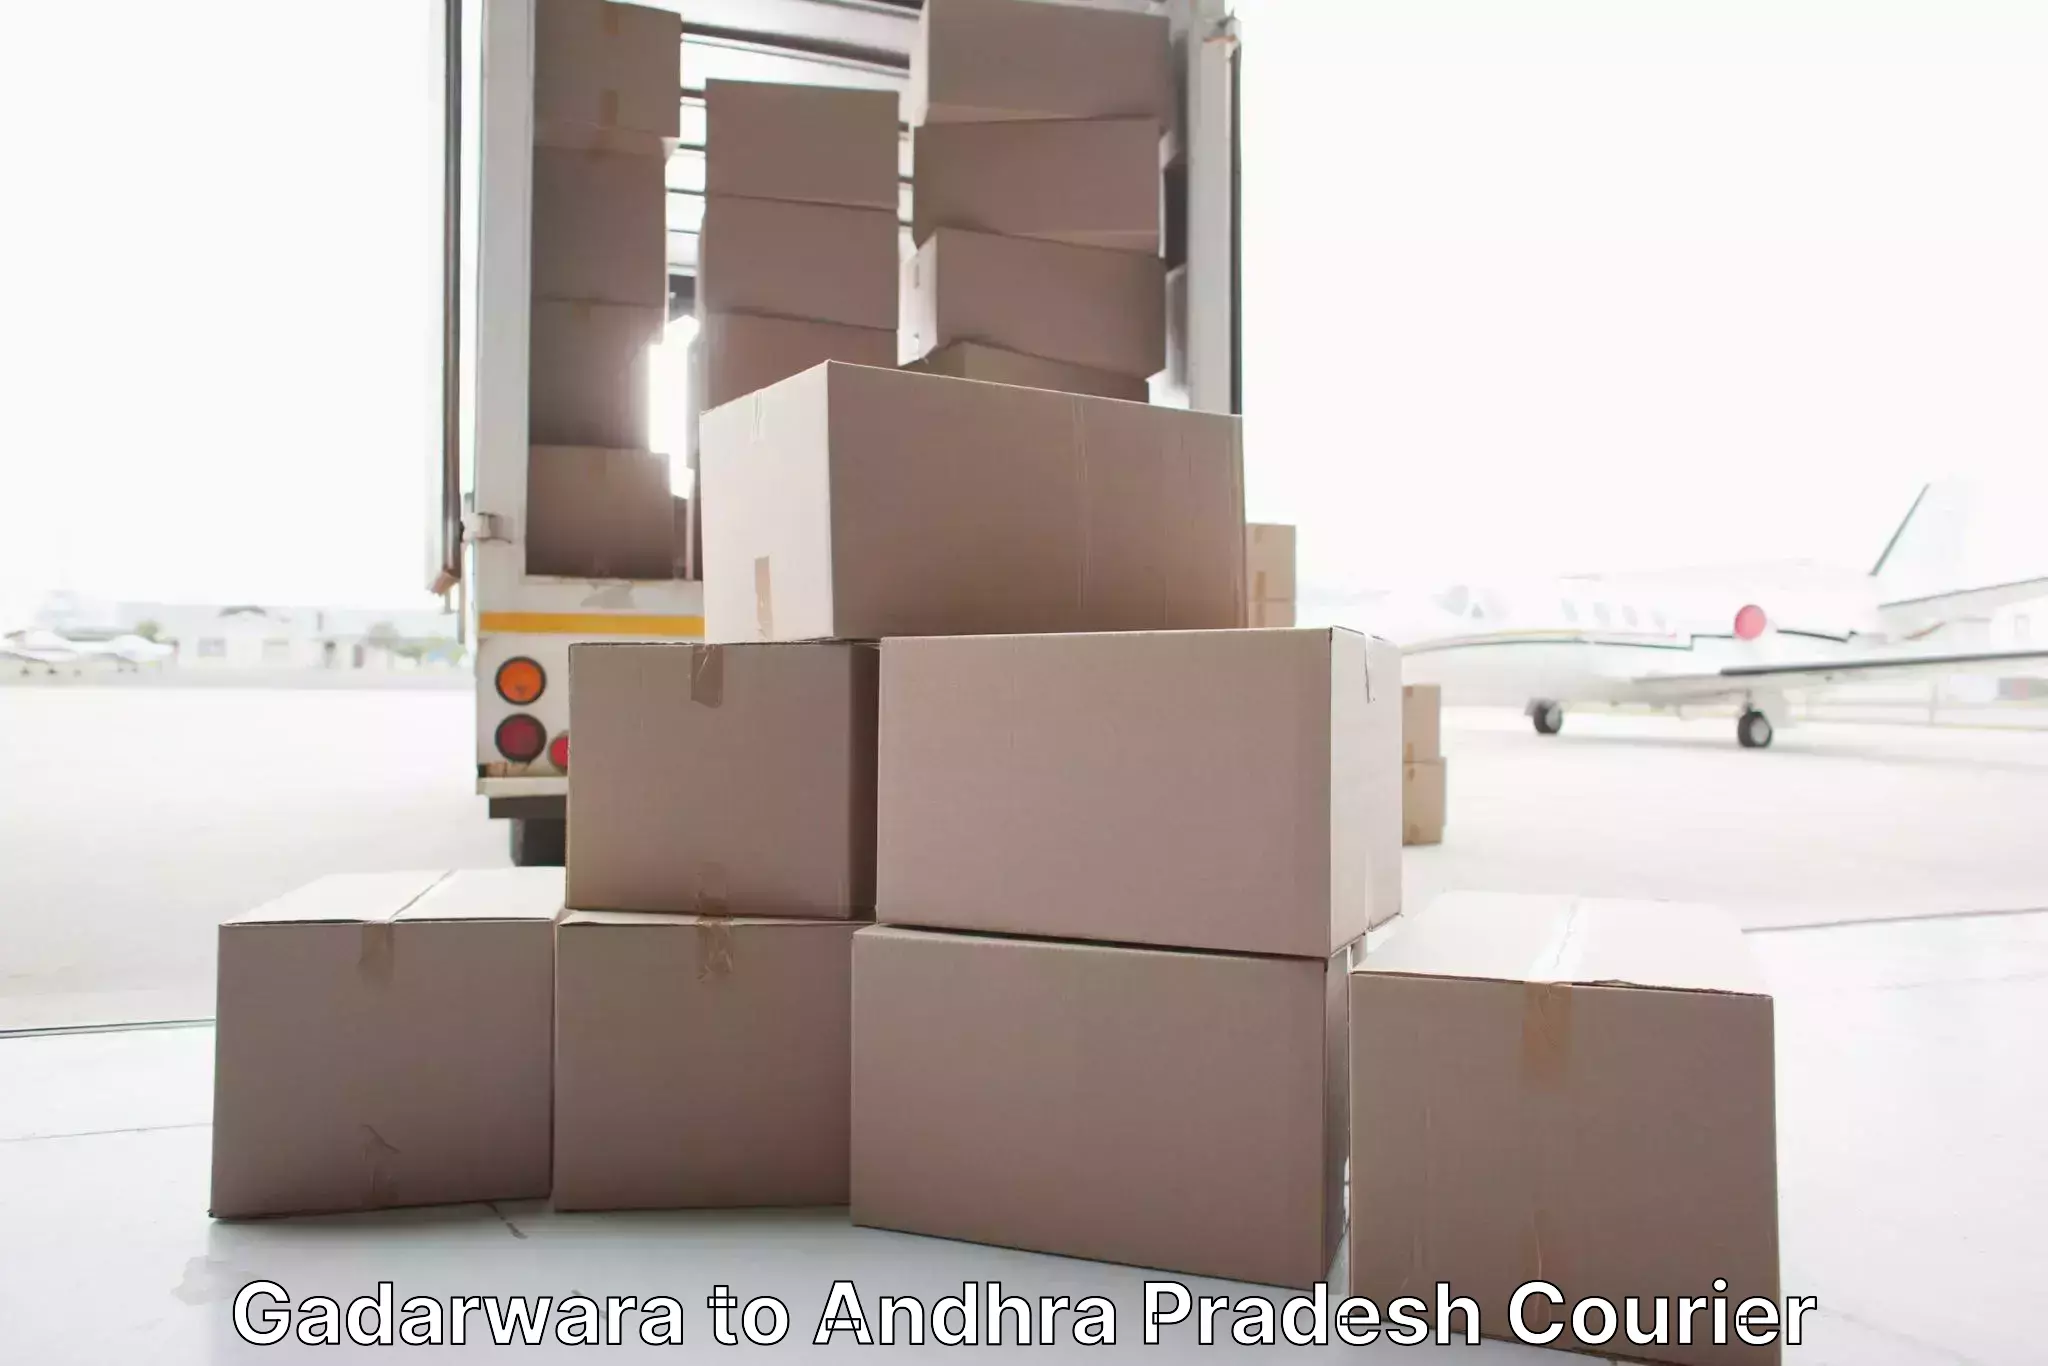 Moving and packing experts Gadarwara to Narsipatnam